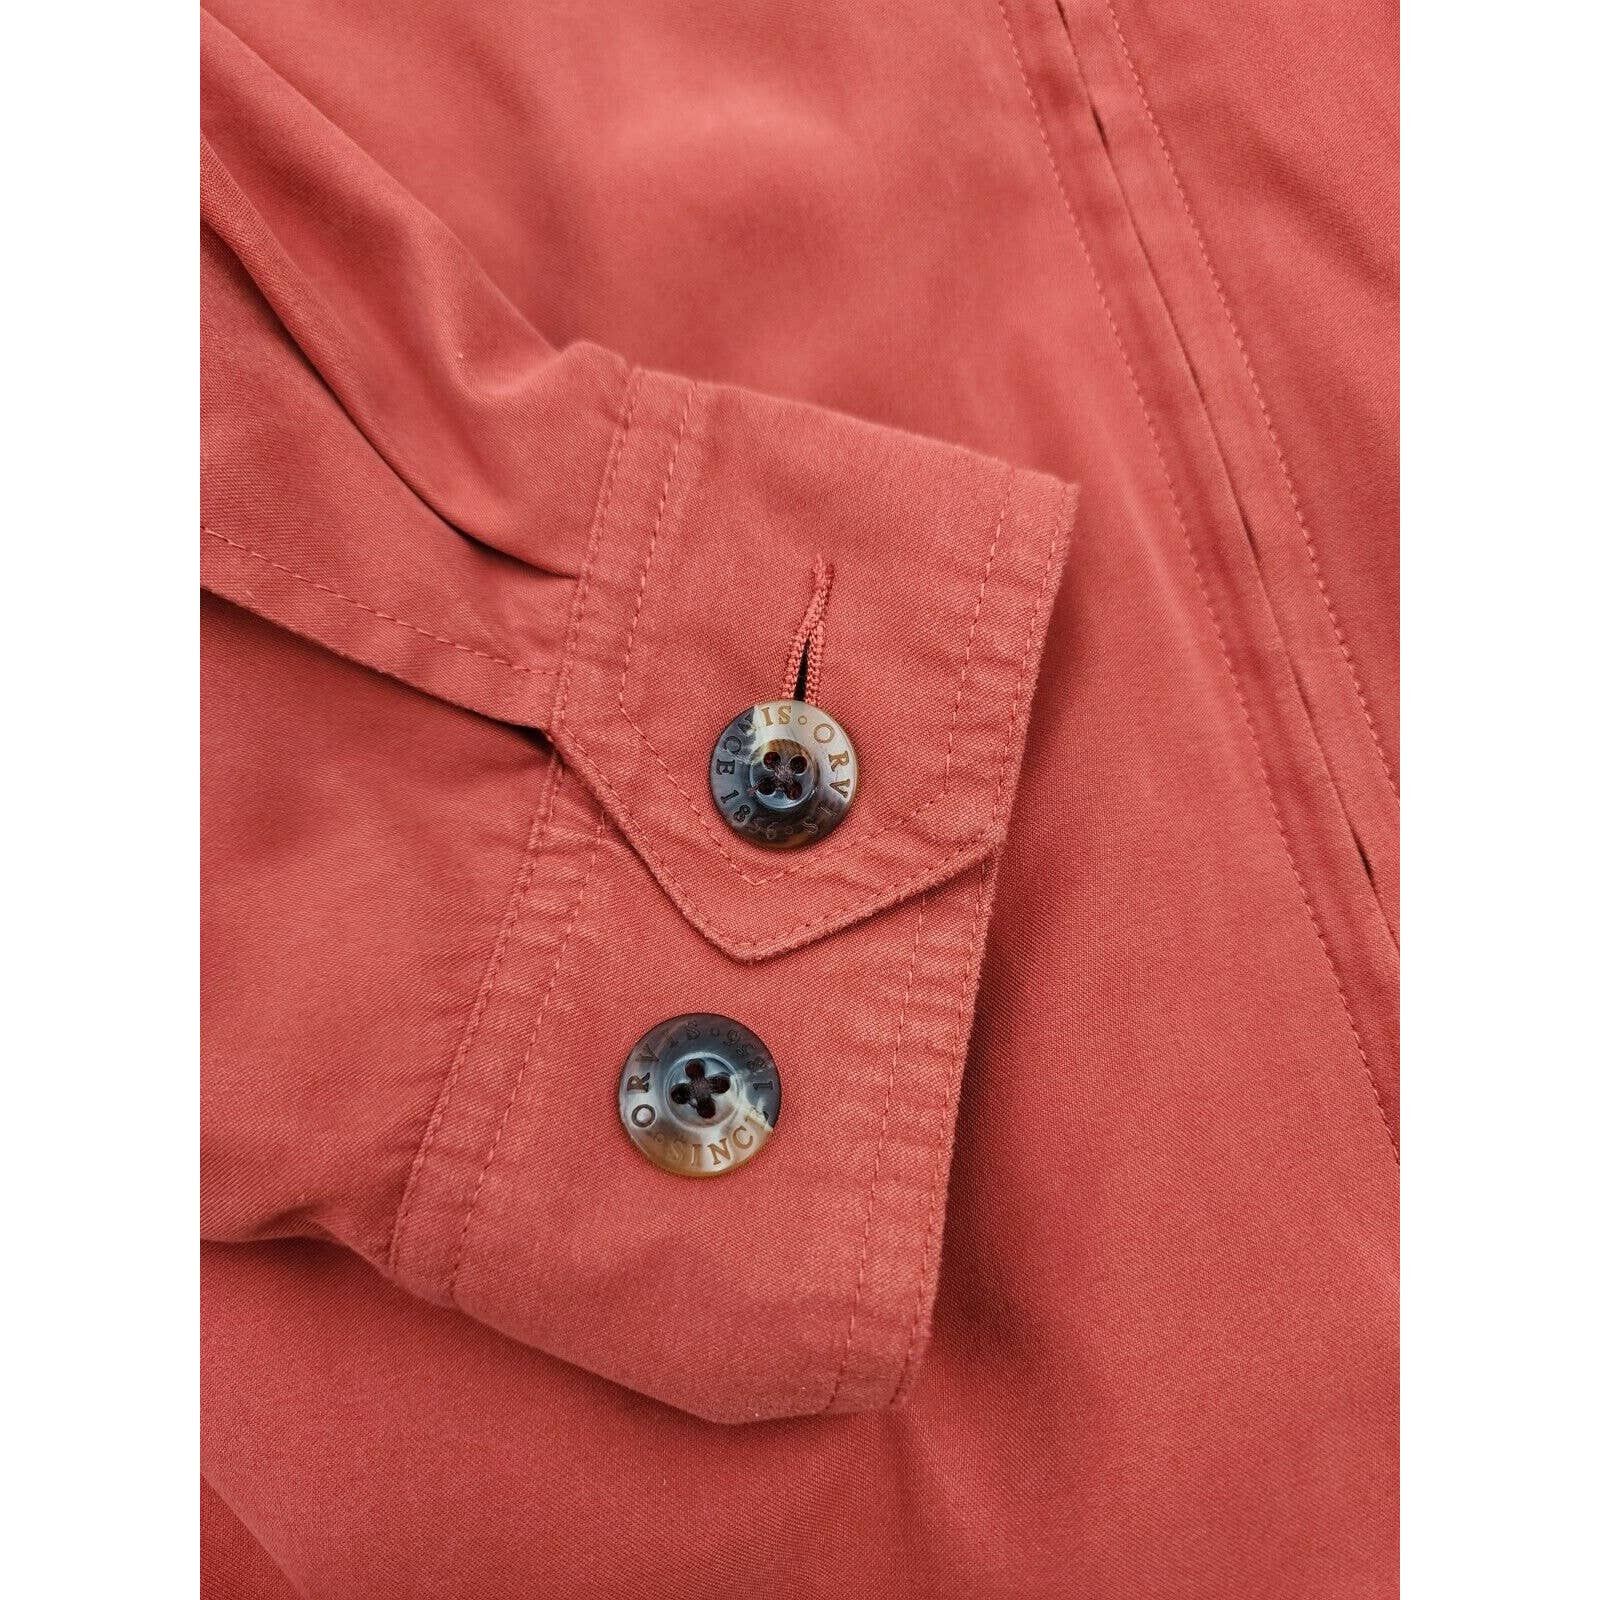 Orvis Orvis Signature Series Jacket Soft Faux Suede Burnt Orange Size US M / EU 48-50 / 2 - 10 Thumbnail